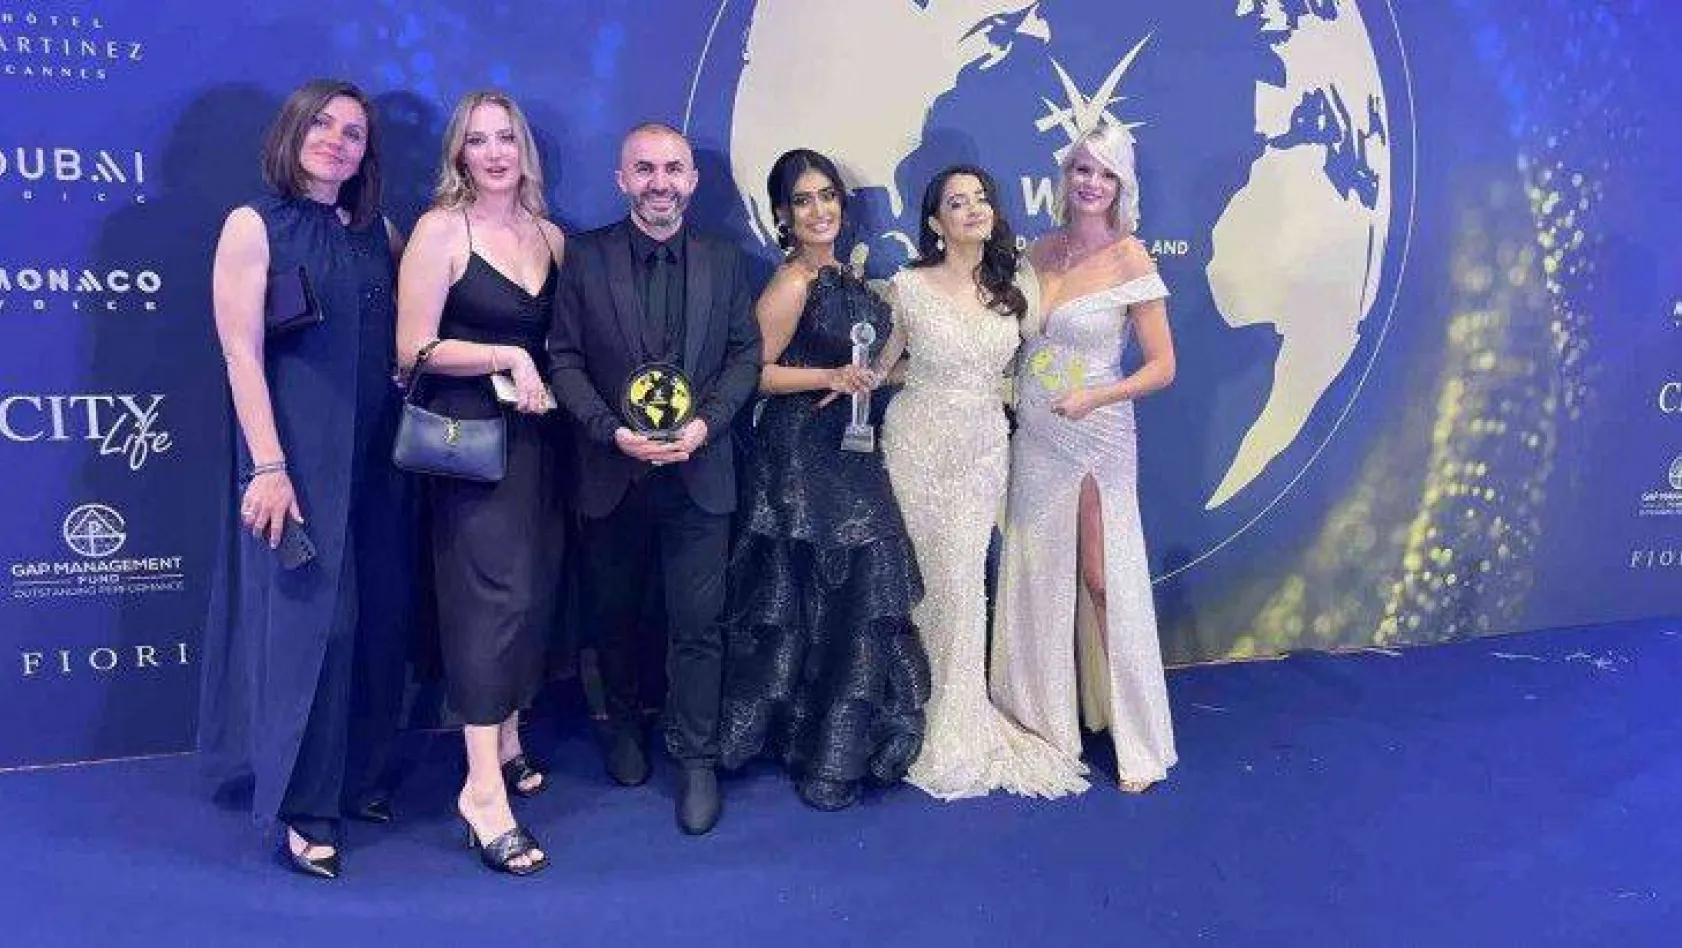 İş adamı Akdeniz'e Cannes'da 'insanlık ödülü' verildi